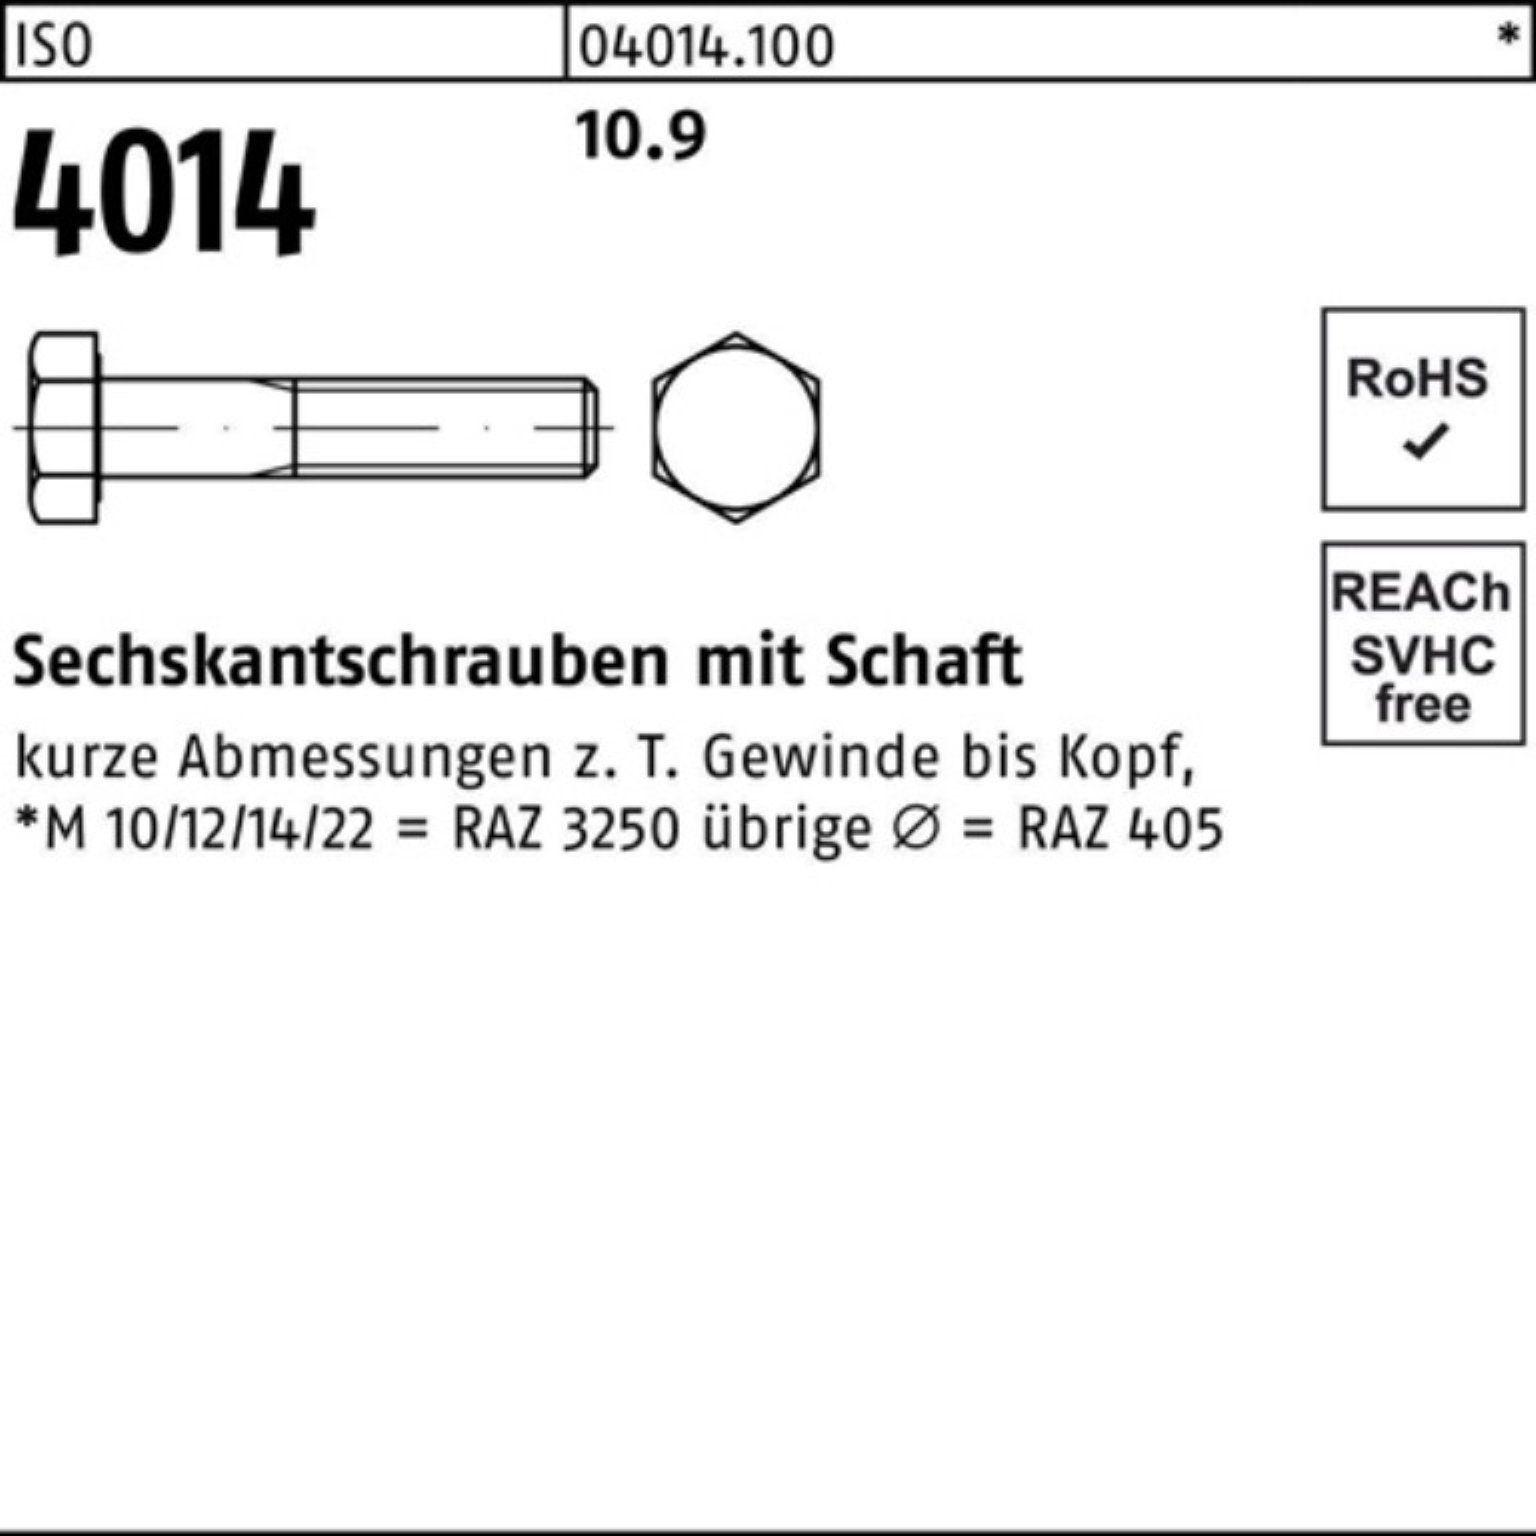 Bufab I Schaft Sechskantschraube Pack 10.9 M27x 4014 ISO 10 Stück Sechskantschraube 100er 120